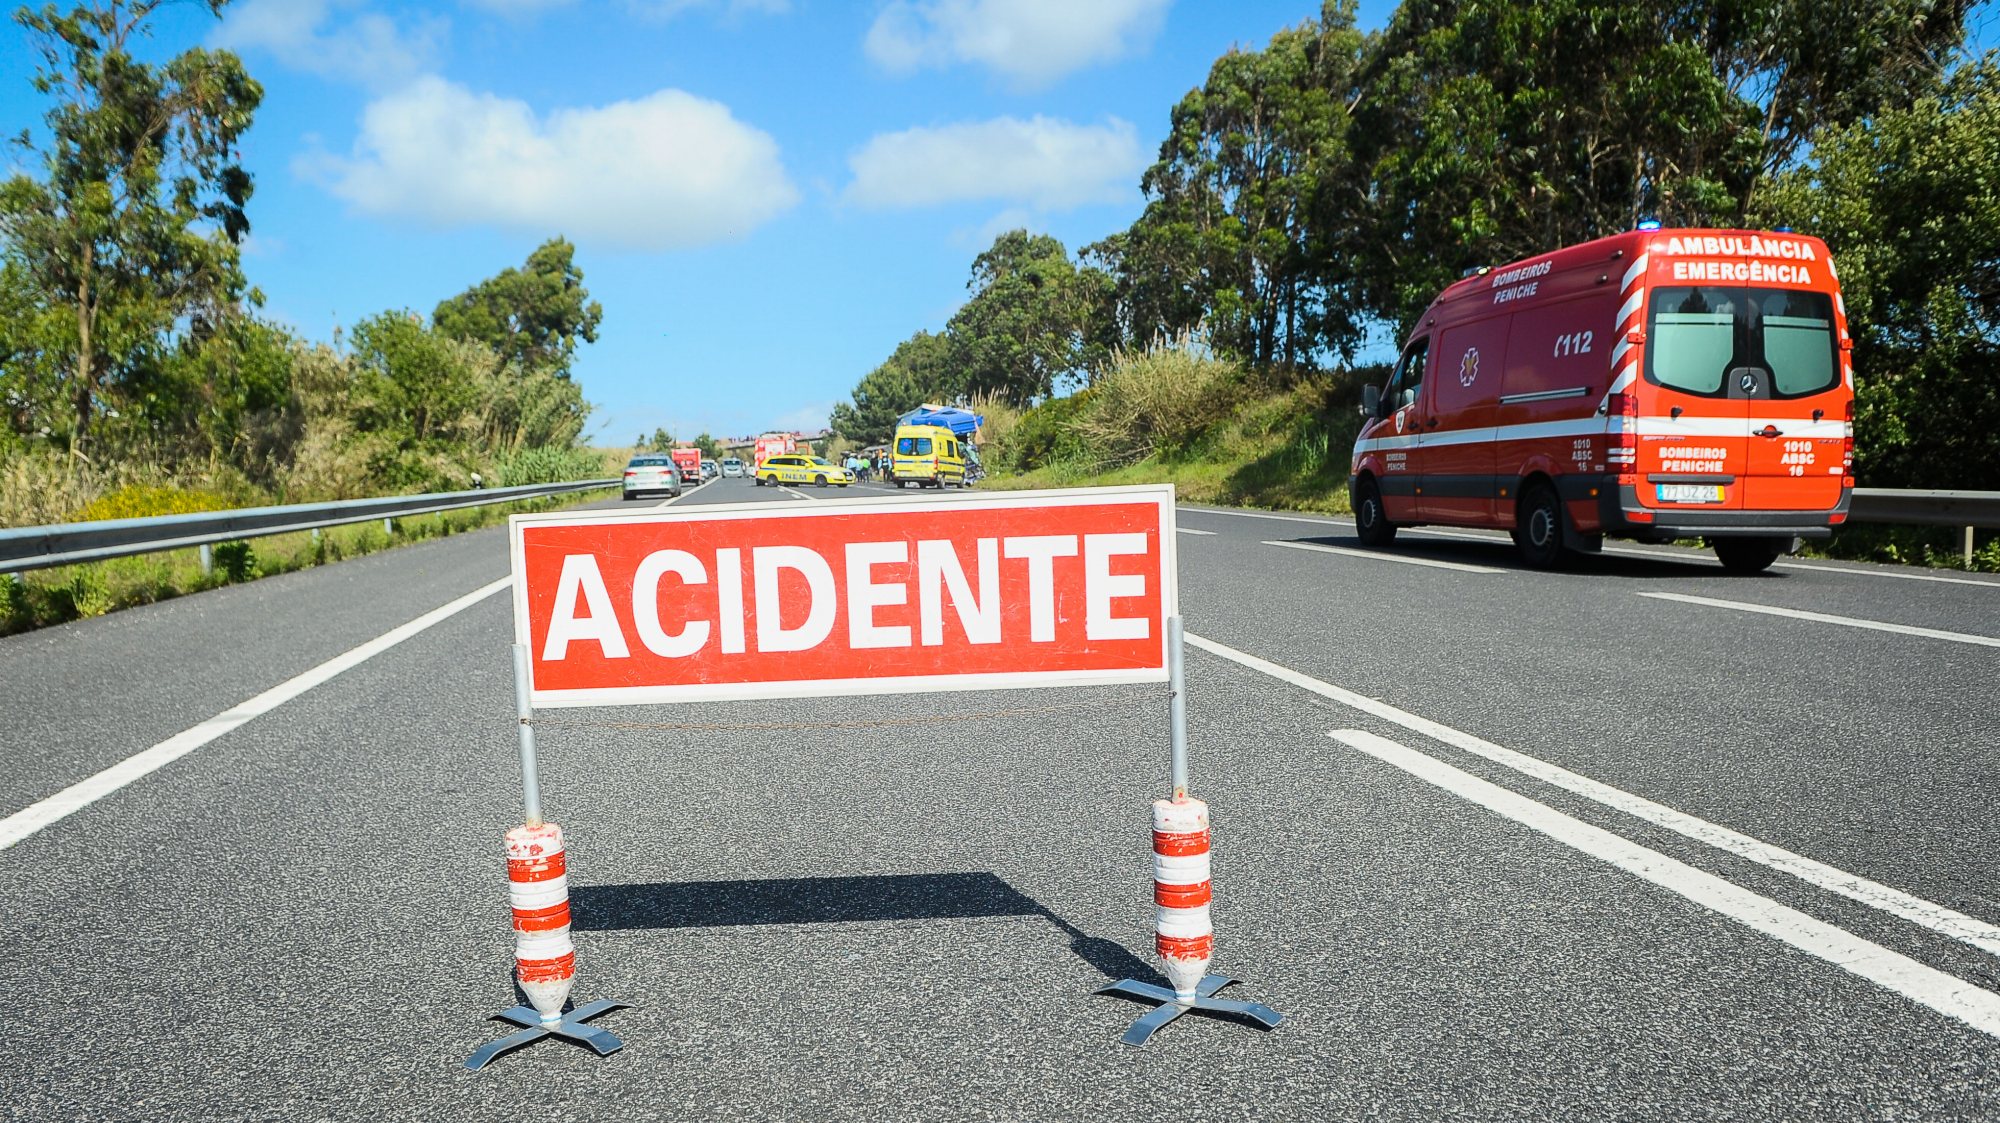 Segundo a fonte, do destacamento de trânsito da GNR de Portalegre, o acidente provocou uma vítima mortal e, pelas 08h10, a estrada ainda estava cortada, por causa tanto da mercadoria derramada como dos veículos acidentados, que ficaram a impedir o trânsito.